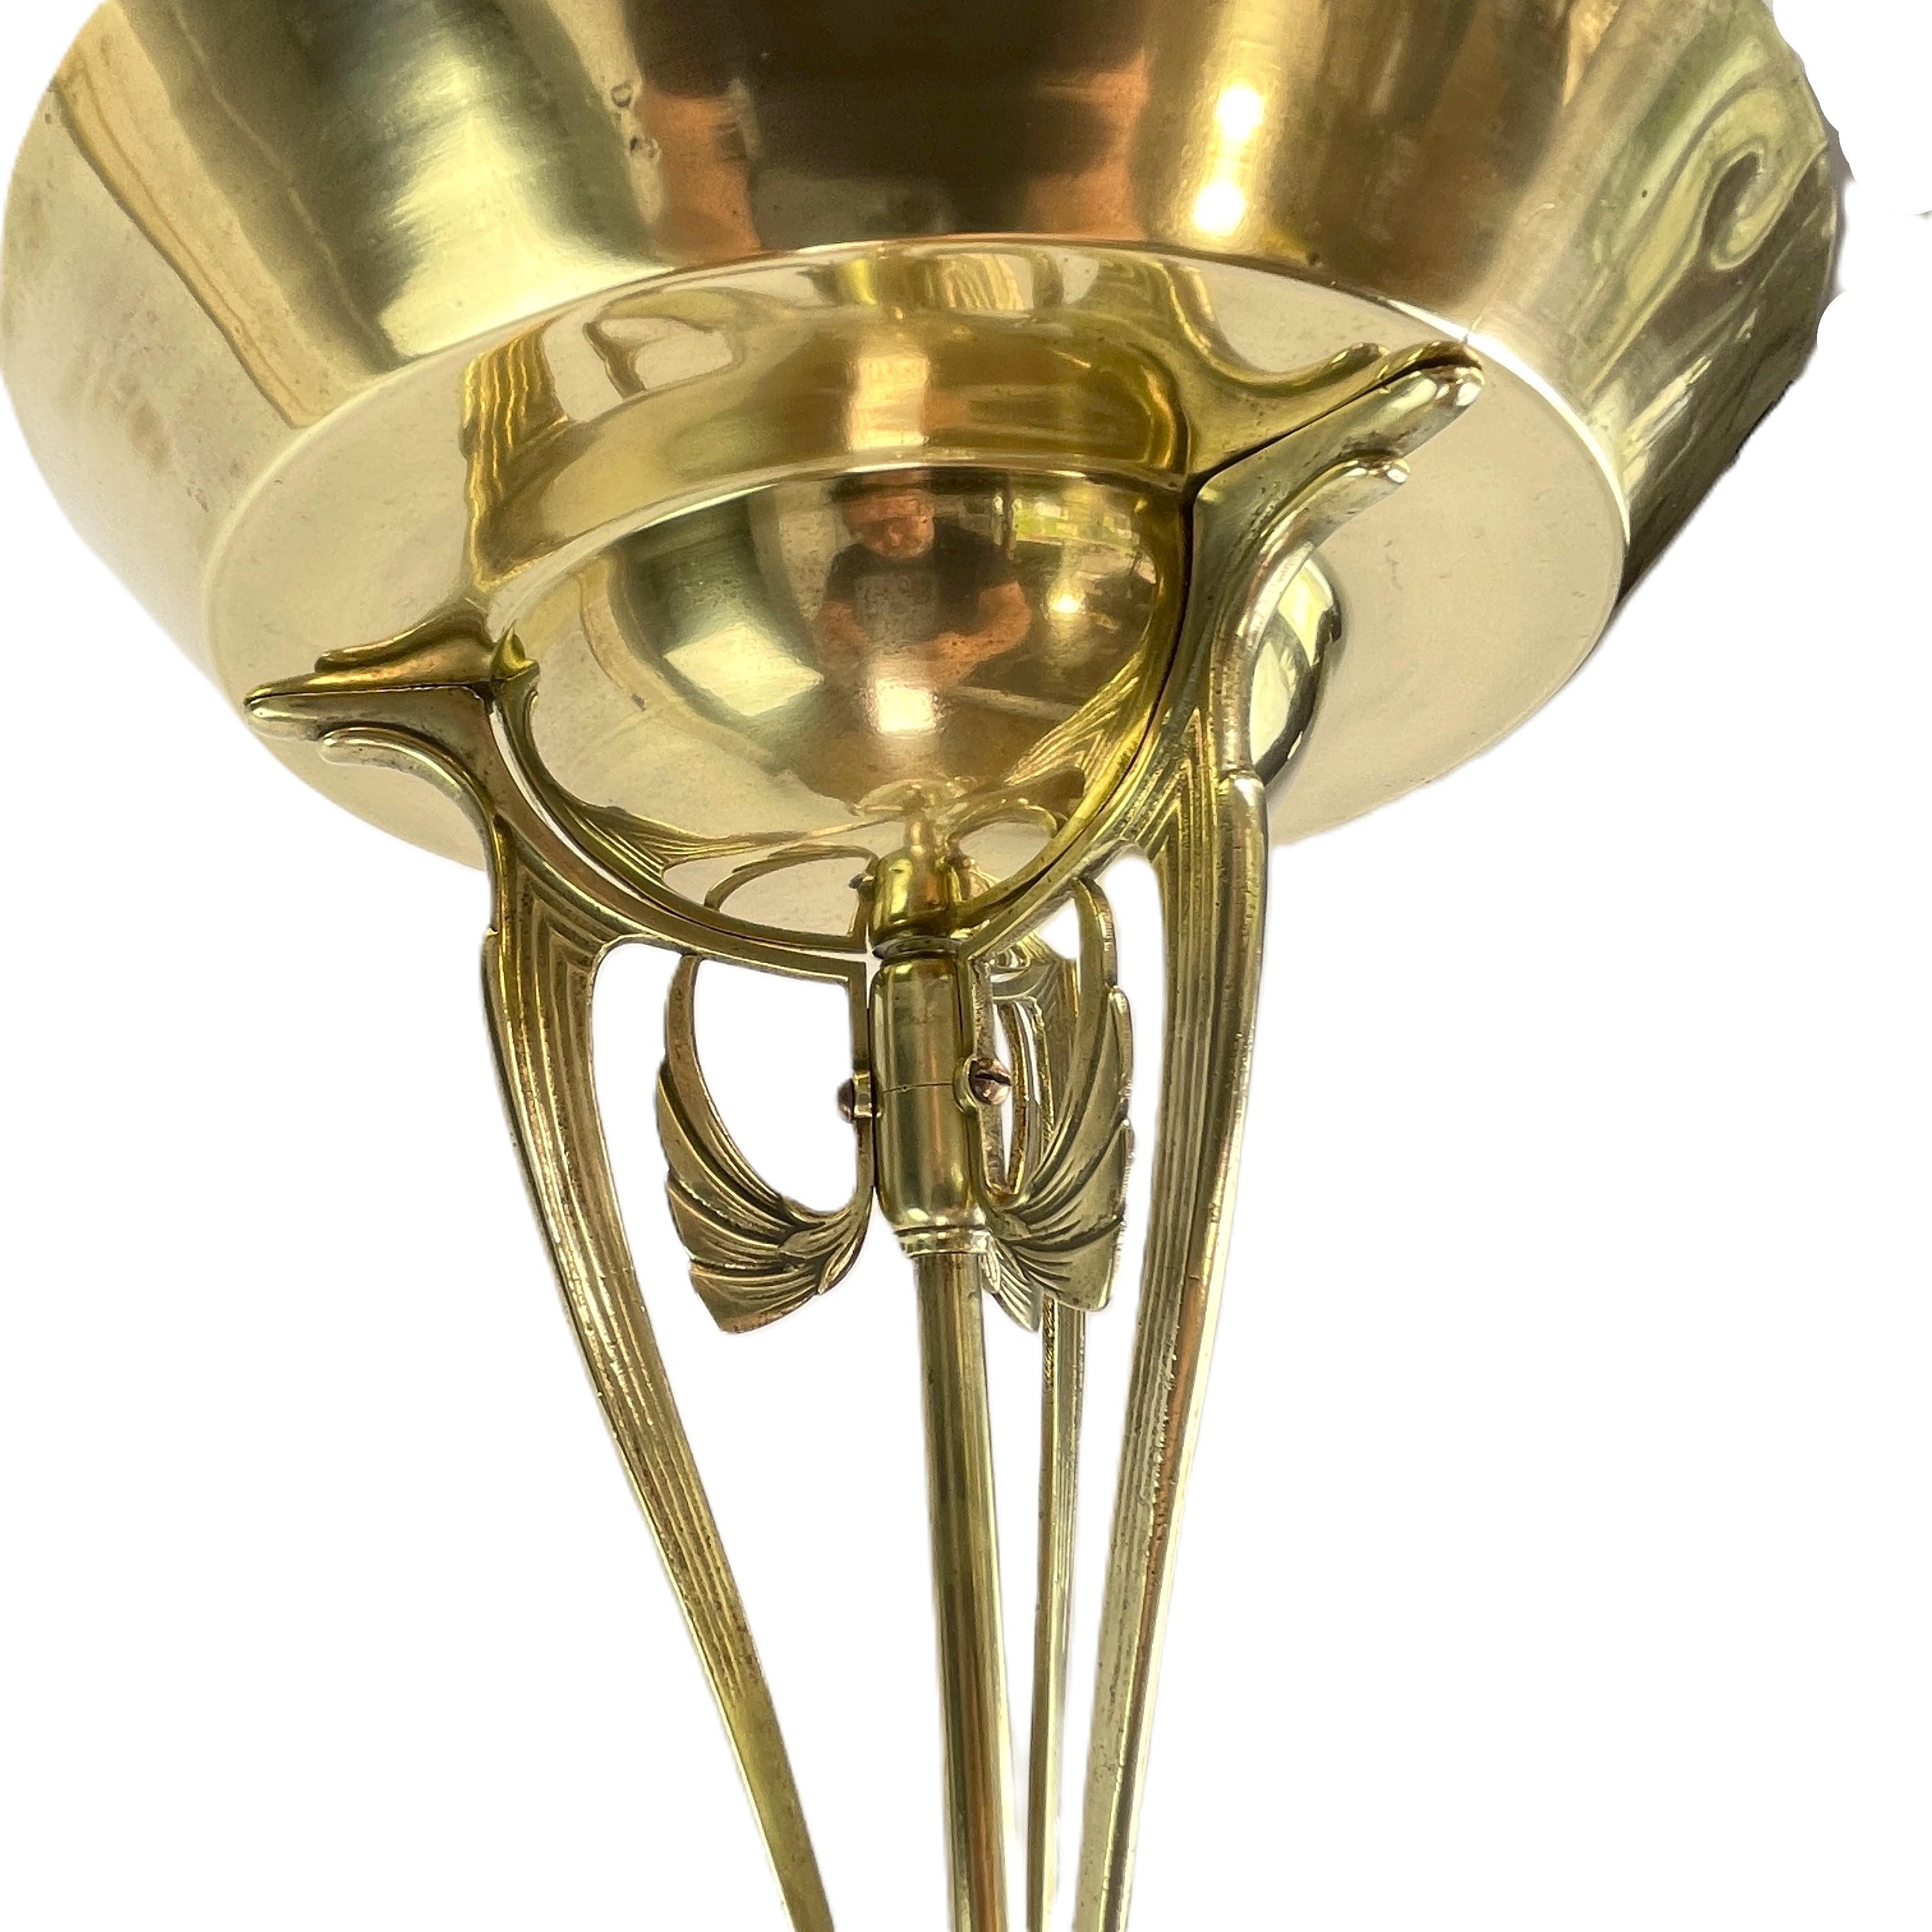 Jugendstil-Deckenlampe Bronze, 1900er Jahre (Messing)